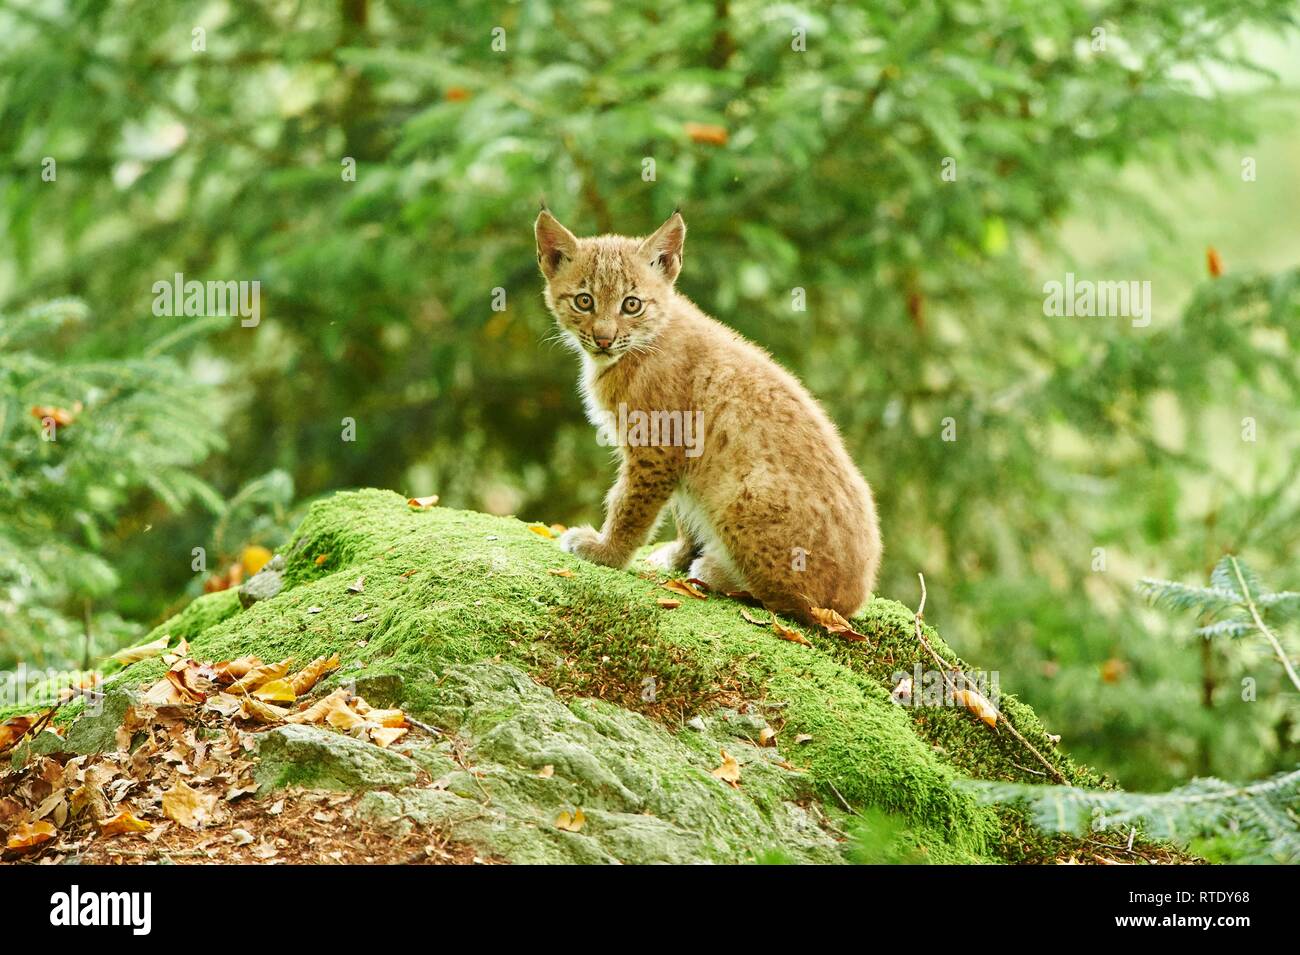 Eurasischen Luchs (Lynx lynx), Cub sitzen Ion bemoosten Felsen n Wald, Captive, Bayerischer Wald, Nationalpark, Bayern, Deutschland Stockfoto